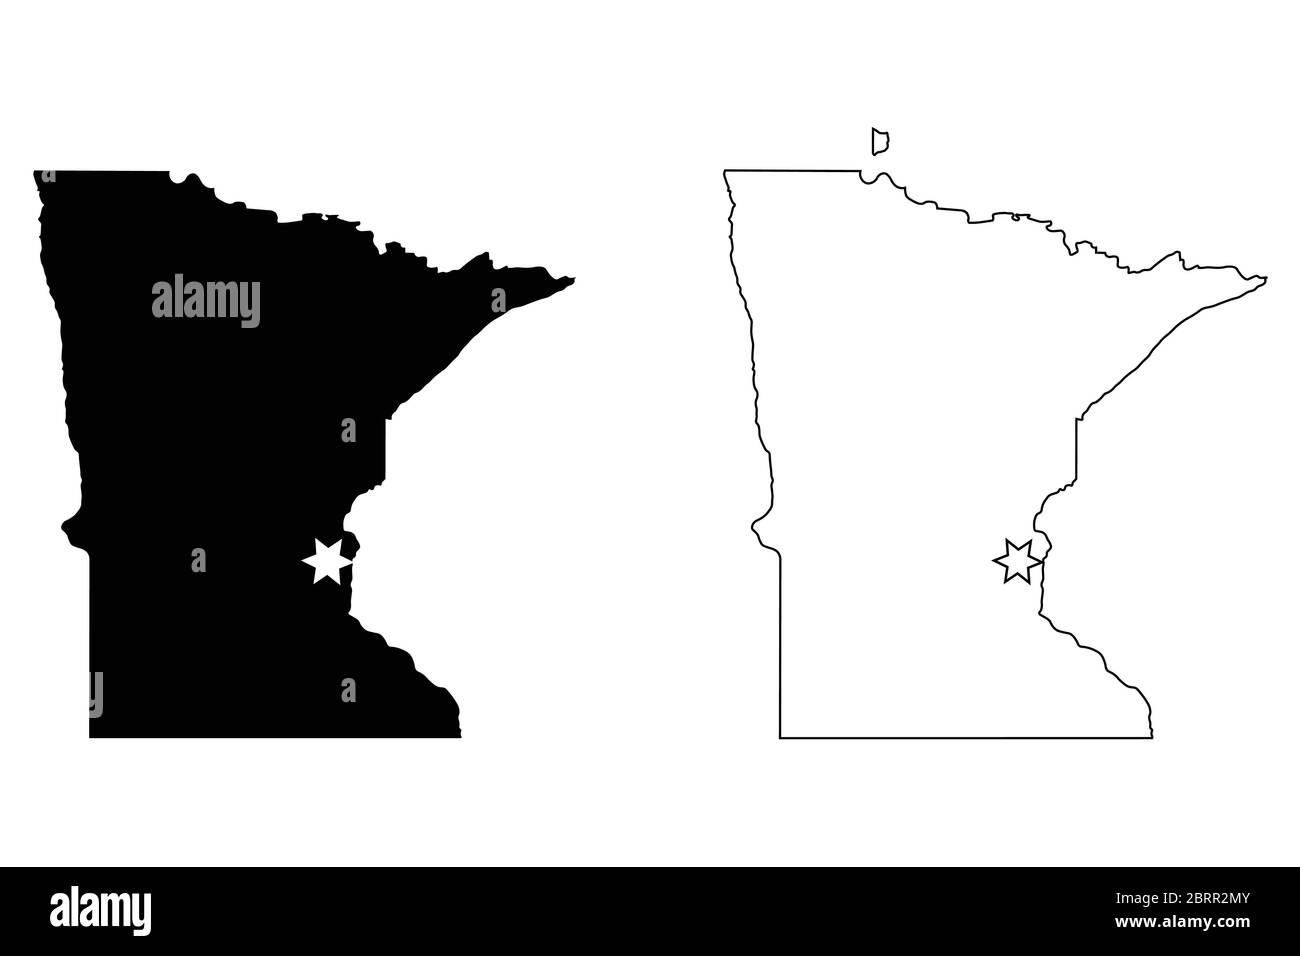 Minnesota MN State Map USA mit Capital City Star in Saint Paul. Schwarze Silhouette und Umriss isoliert auf weißem Hintergrund. EPS-Vektor Stock Vektor